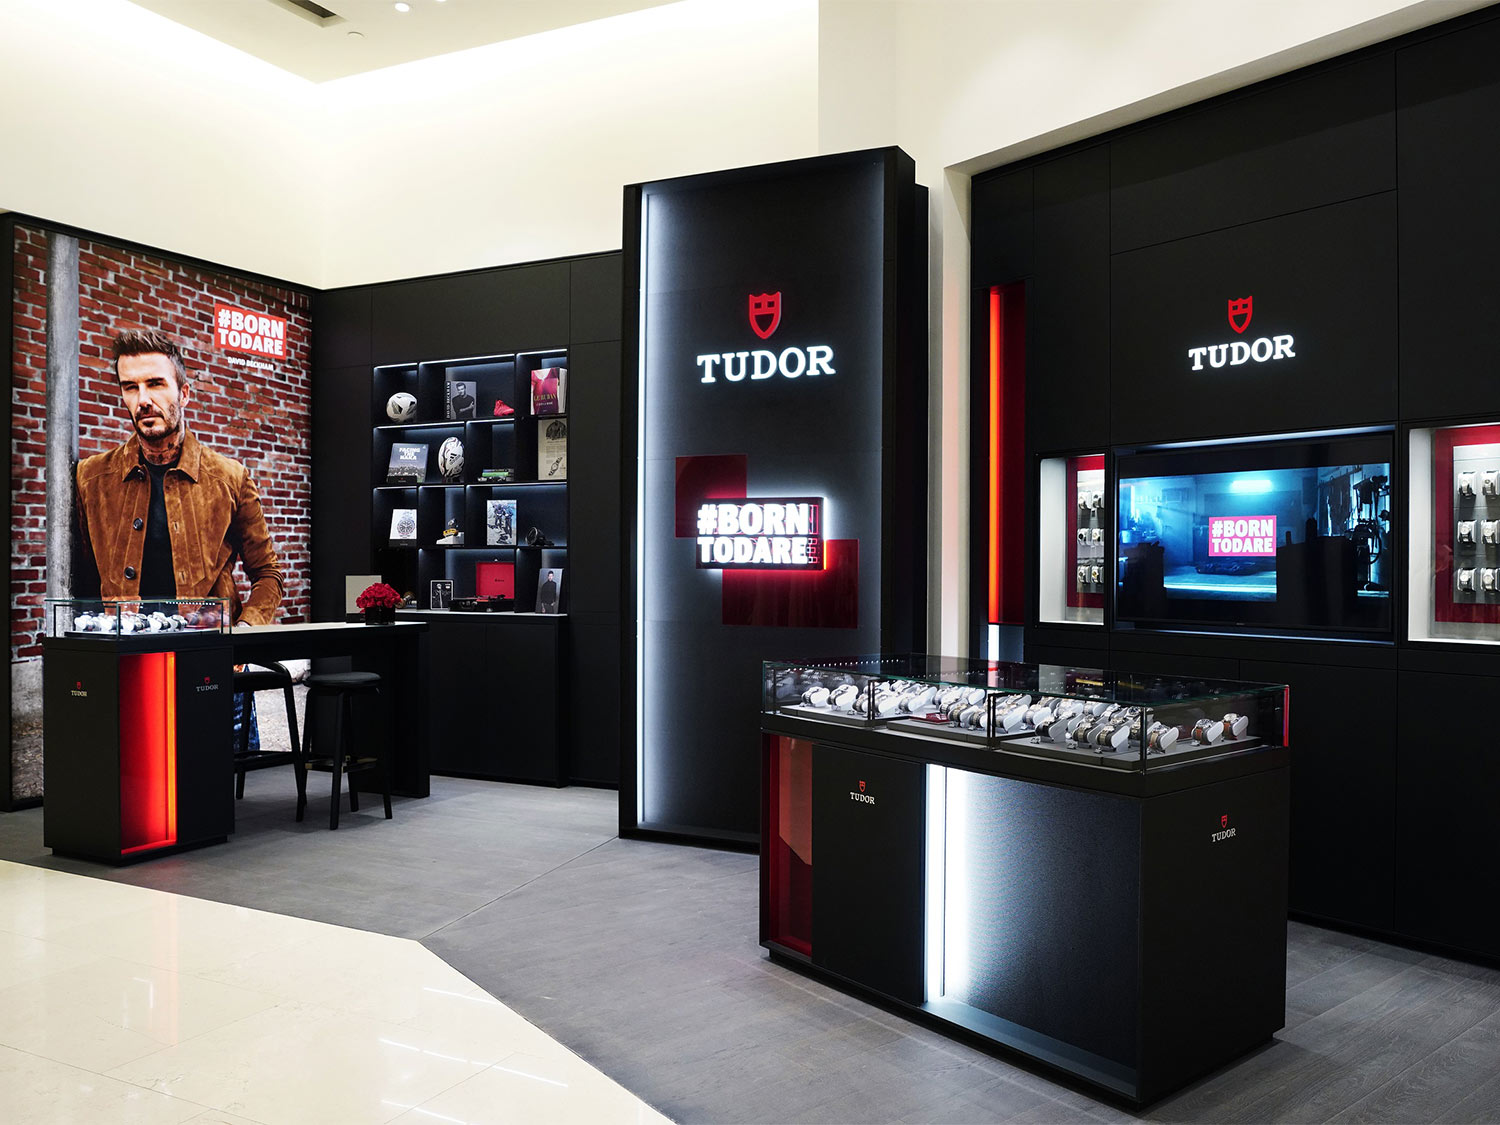 TUDOR opens new shop-in-shop